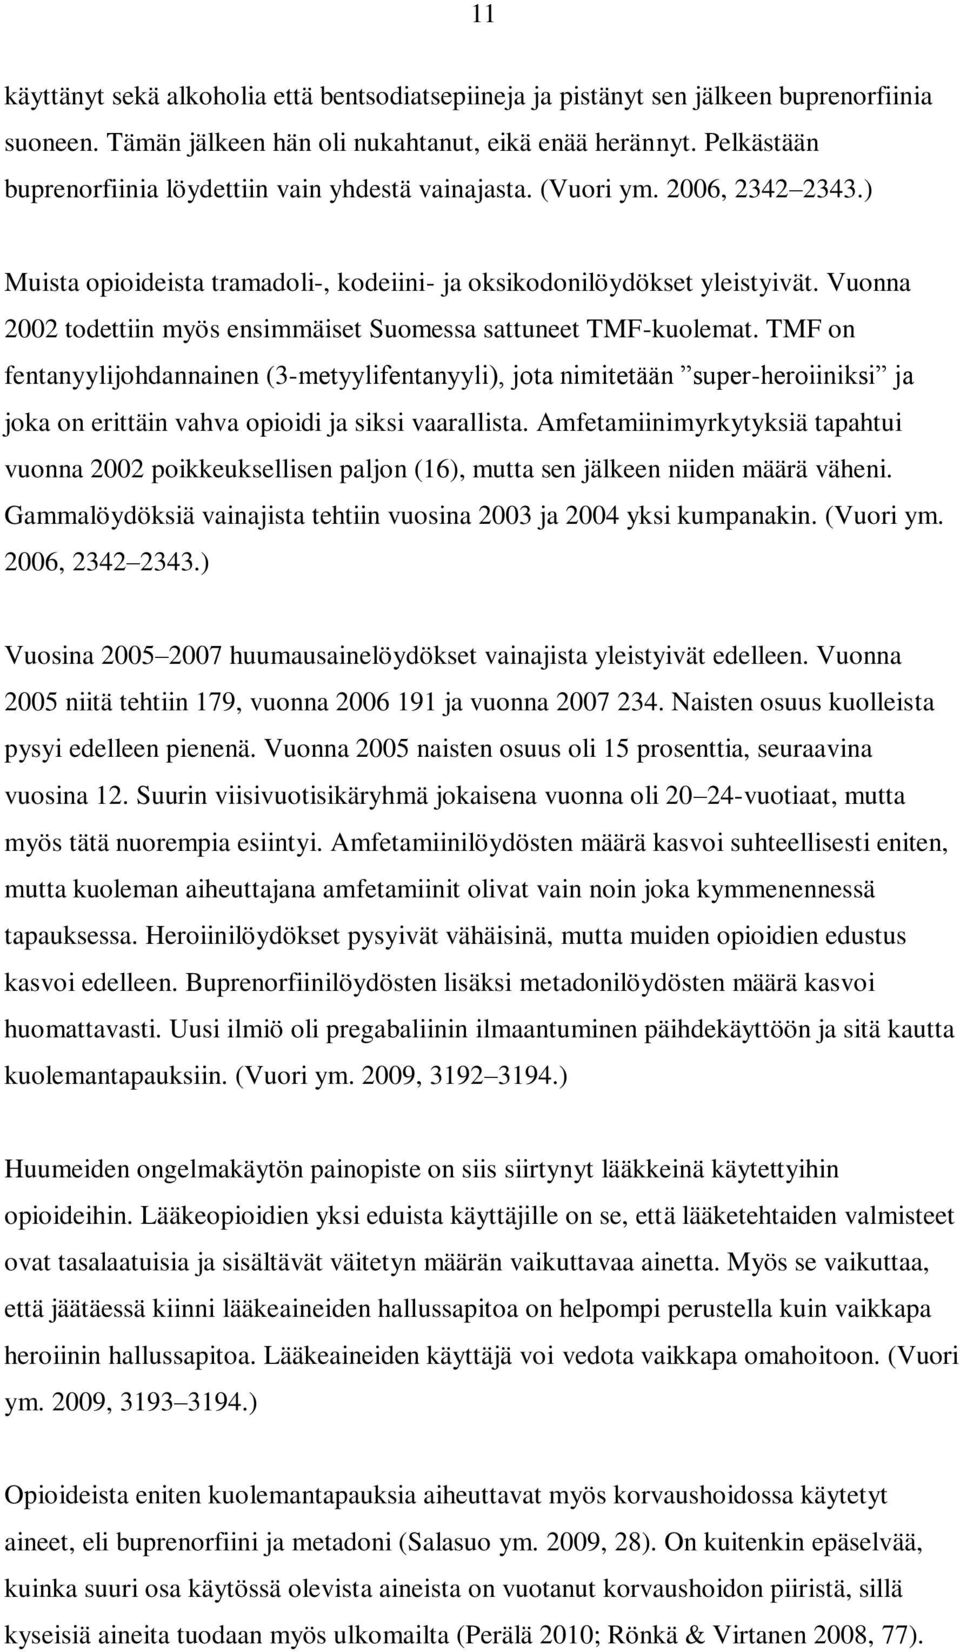 Vuonna 2002 todettiin myös ensimmäiset Suomessa sattuneet TMF-kuolemat.